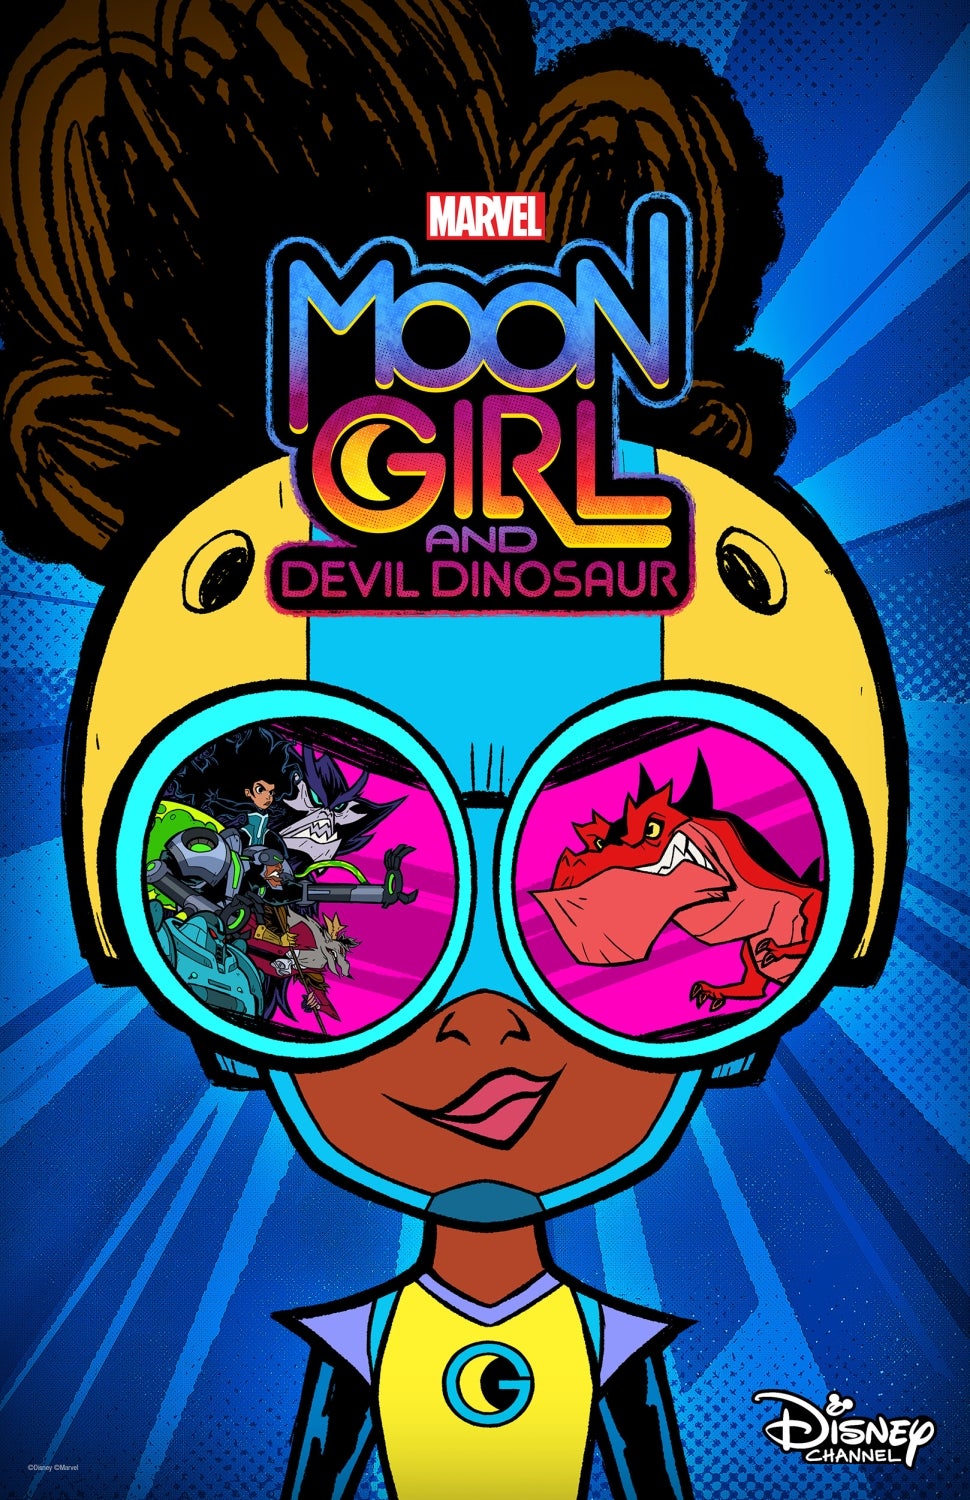 Marvel's Moon Girl and Devil Dinosaur POSTER